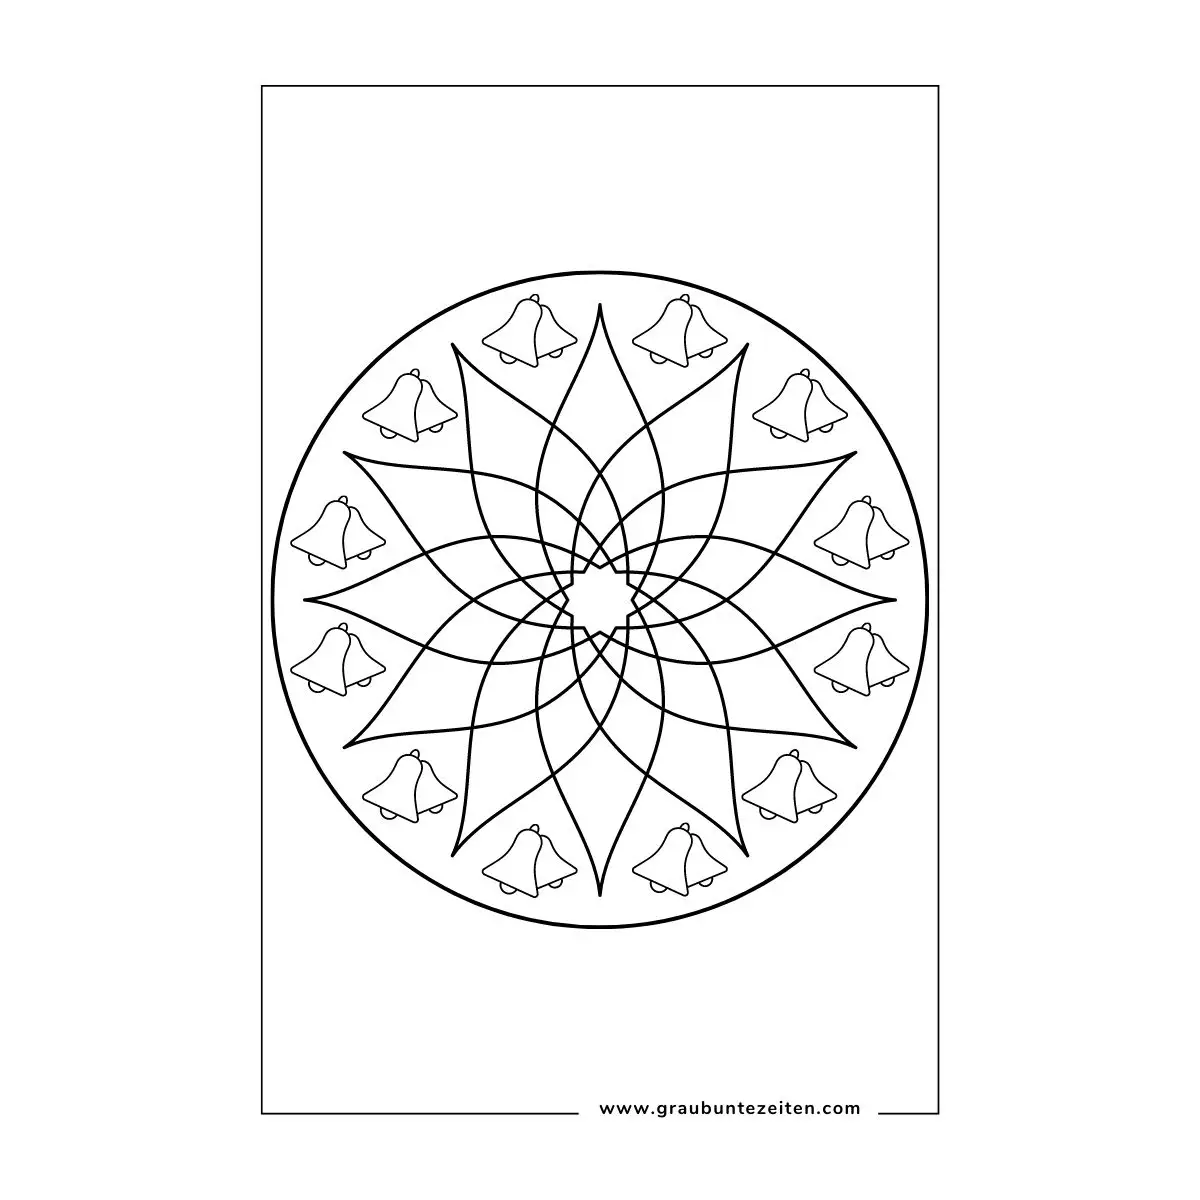 Ausmalbild Mandala Blattformen im Kreis angeordnet. Am Rand sind kreisförmig als Umrandung je zwei Glocken.